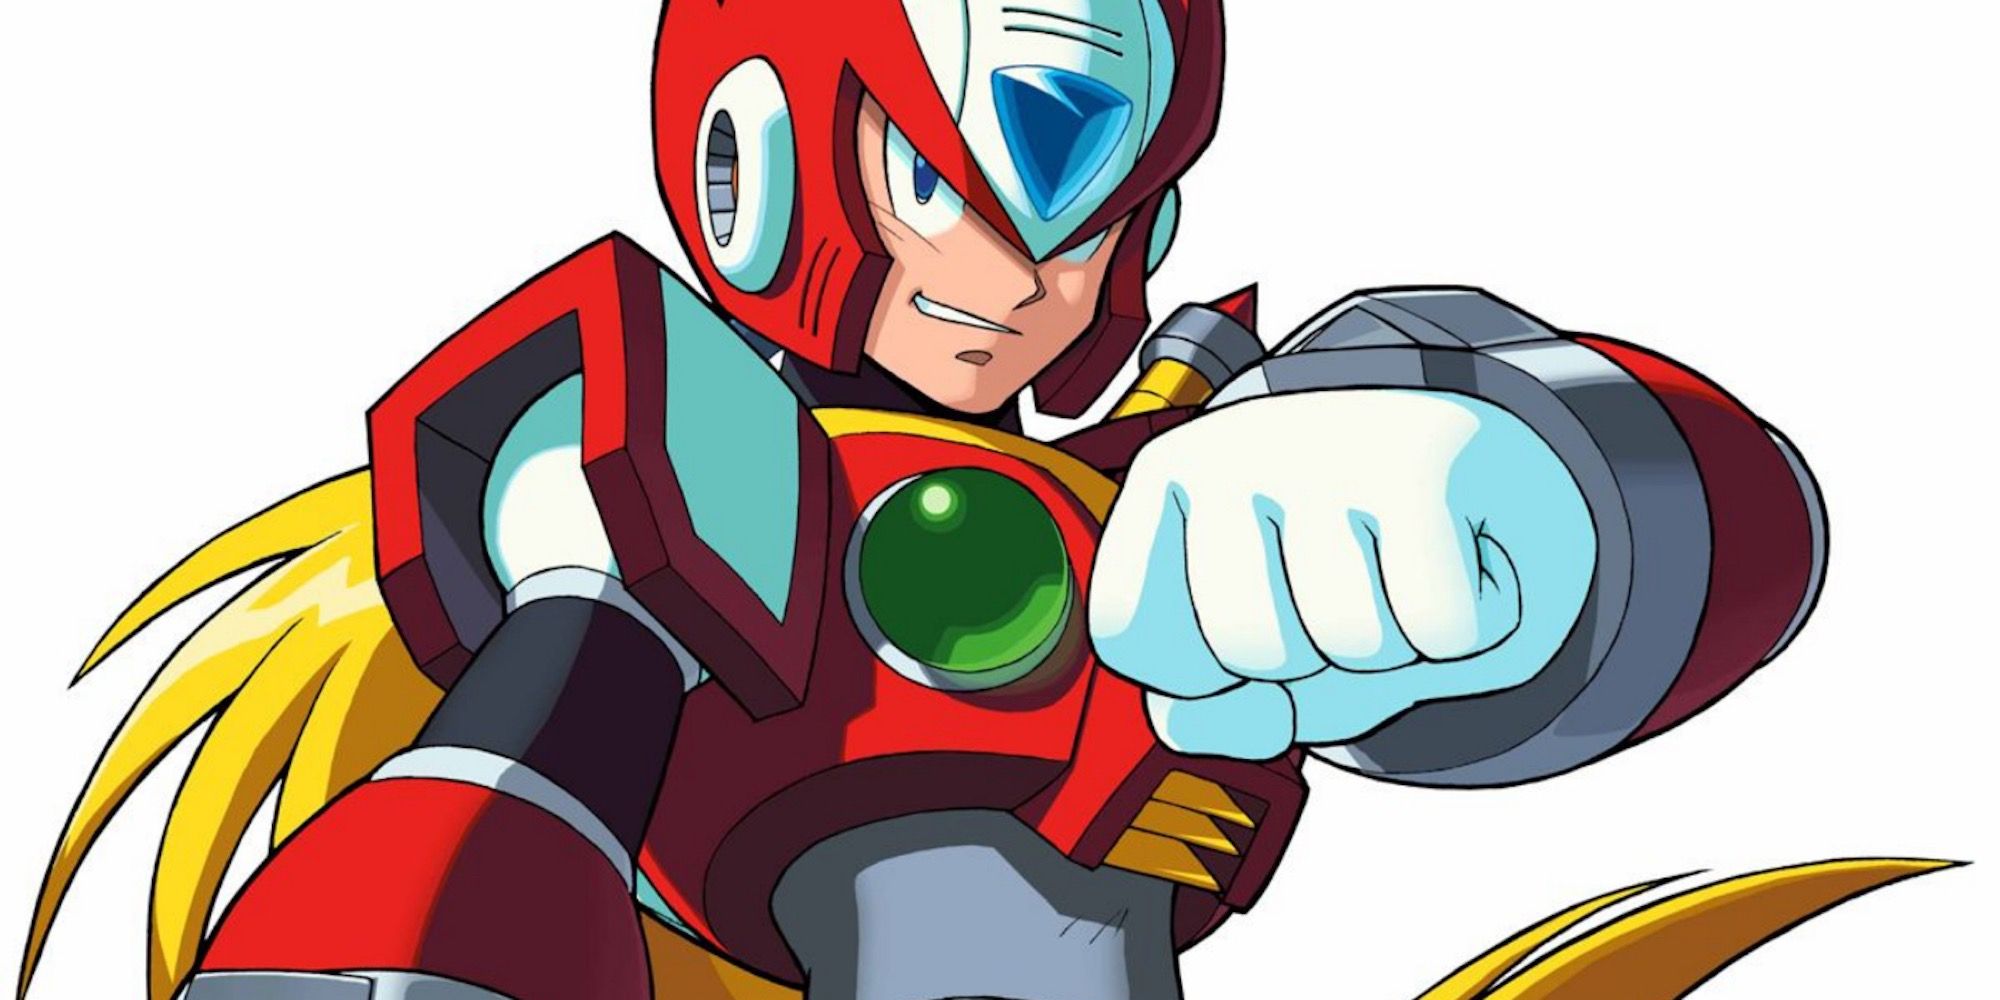 Zero from Mega Man X